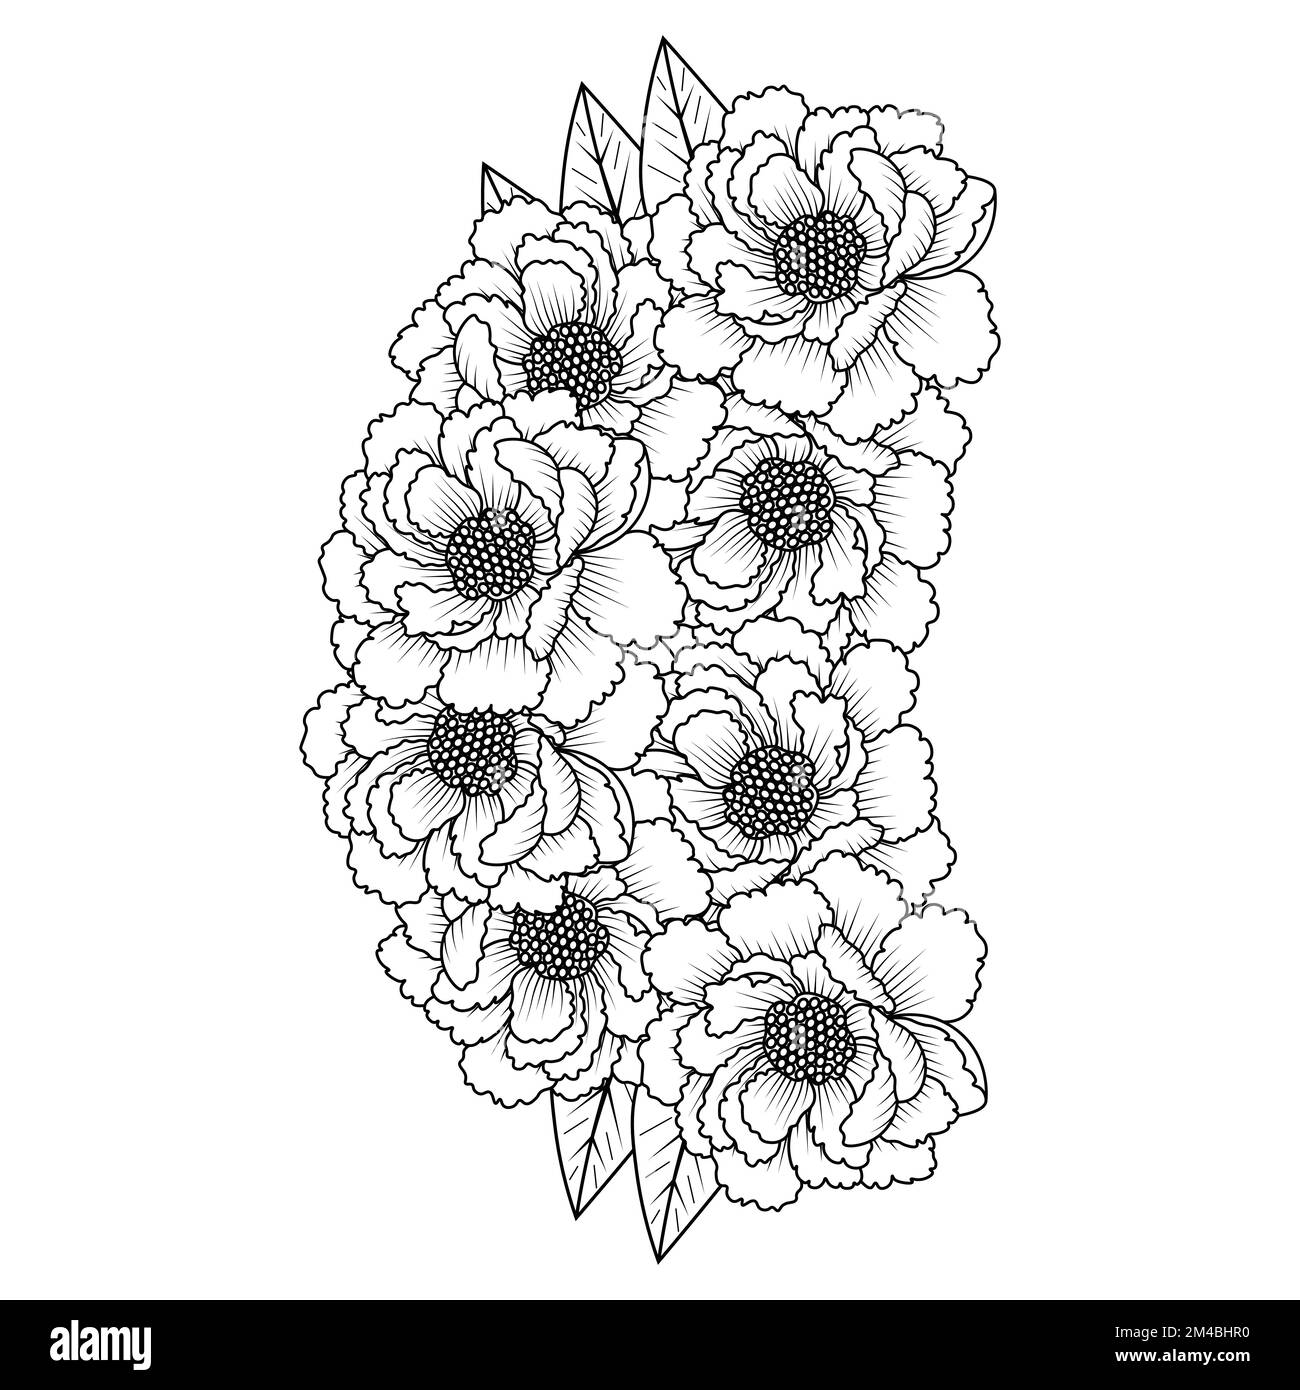 peony fiore facile schizzi matita disegno di linea bianco e nero disegno disegno arte contorno Illustrazione Vettoriale